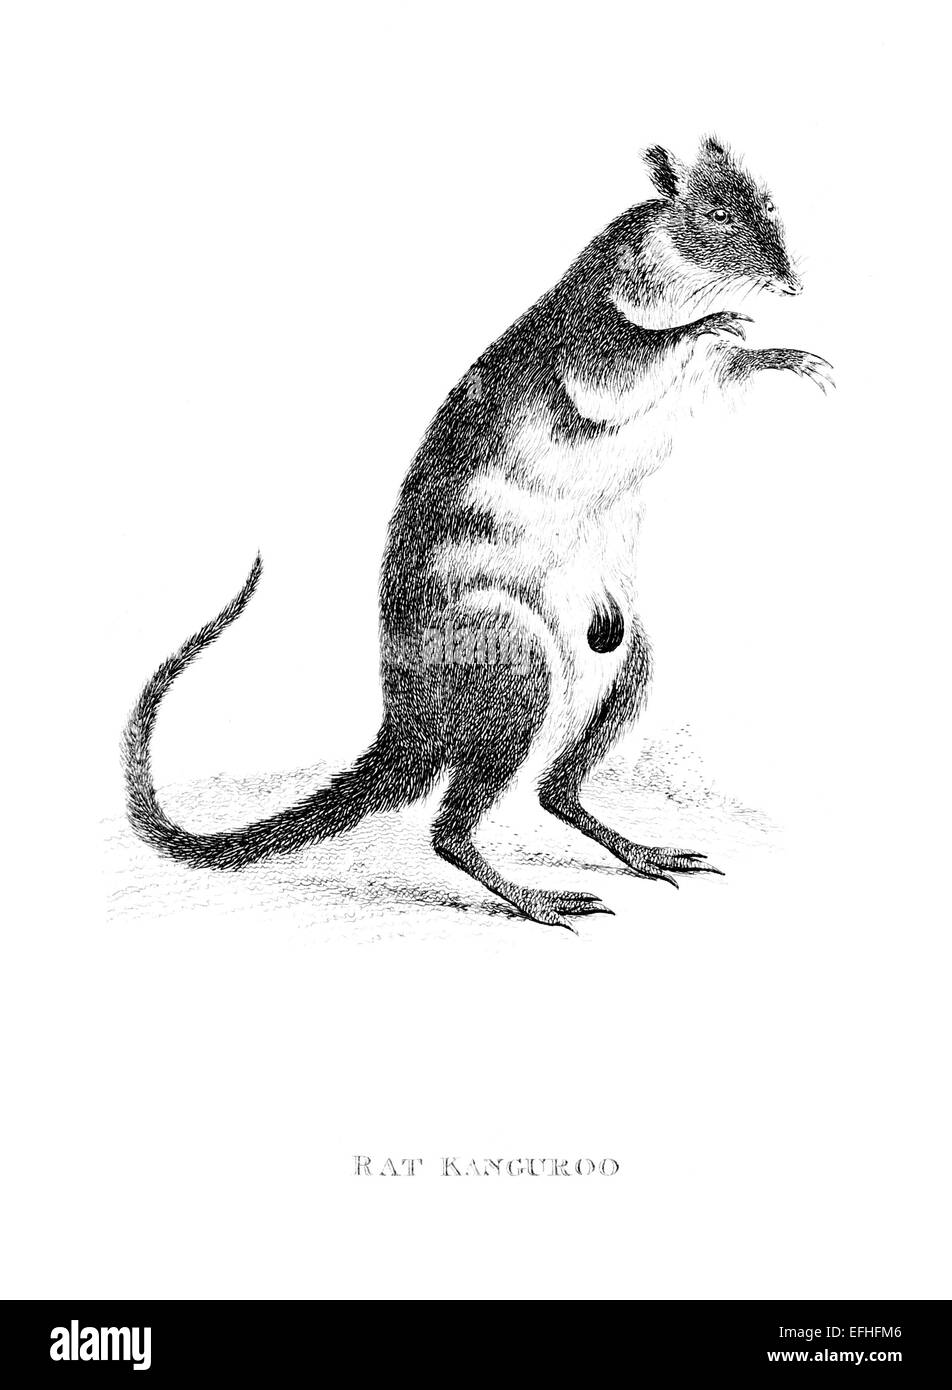 La gravure de l'époque victorienne d'un rat kangourou. Image restaurée numériquement à partir d'un milieu du xixe siècle l'encyclopédie. Banque D'Images